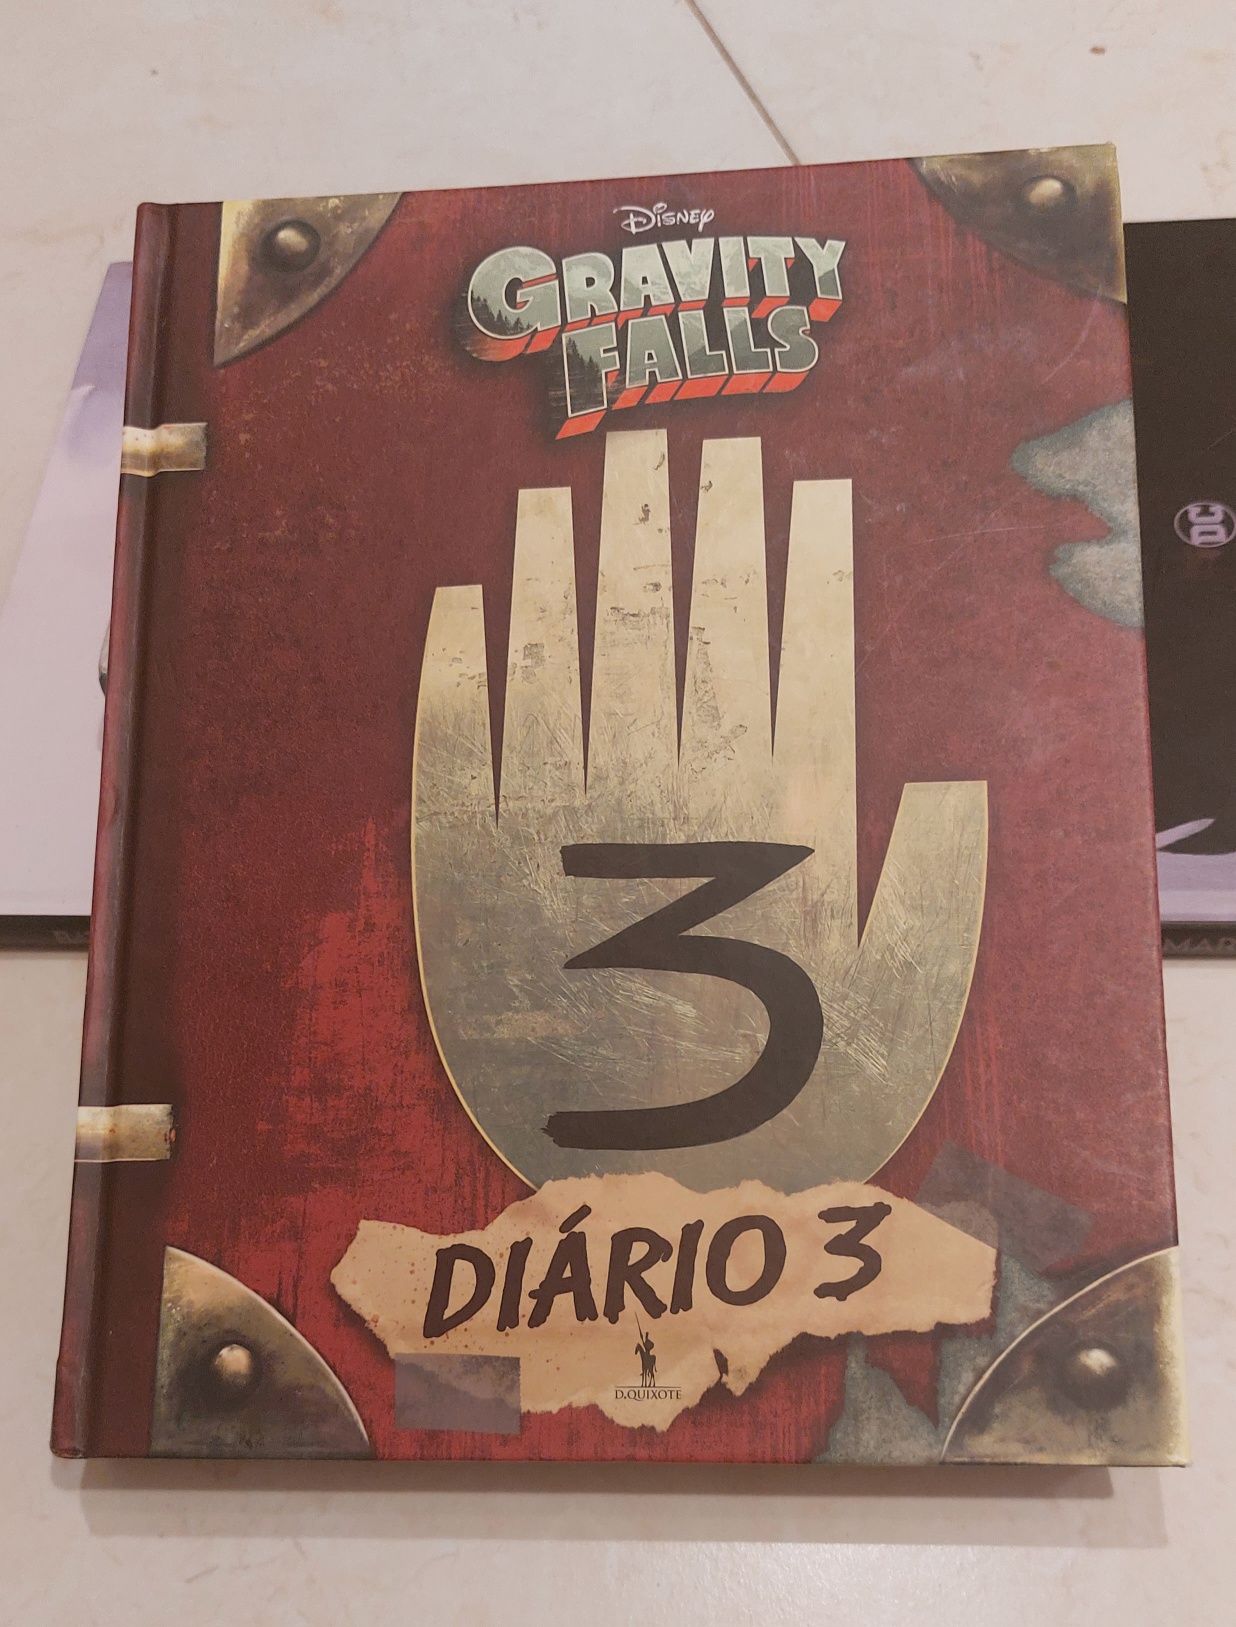 Diário 3 Gravity Falls